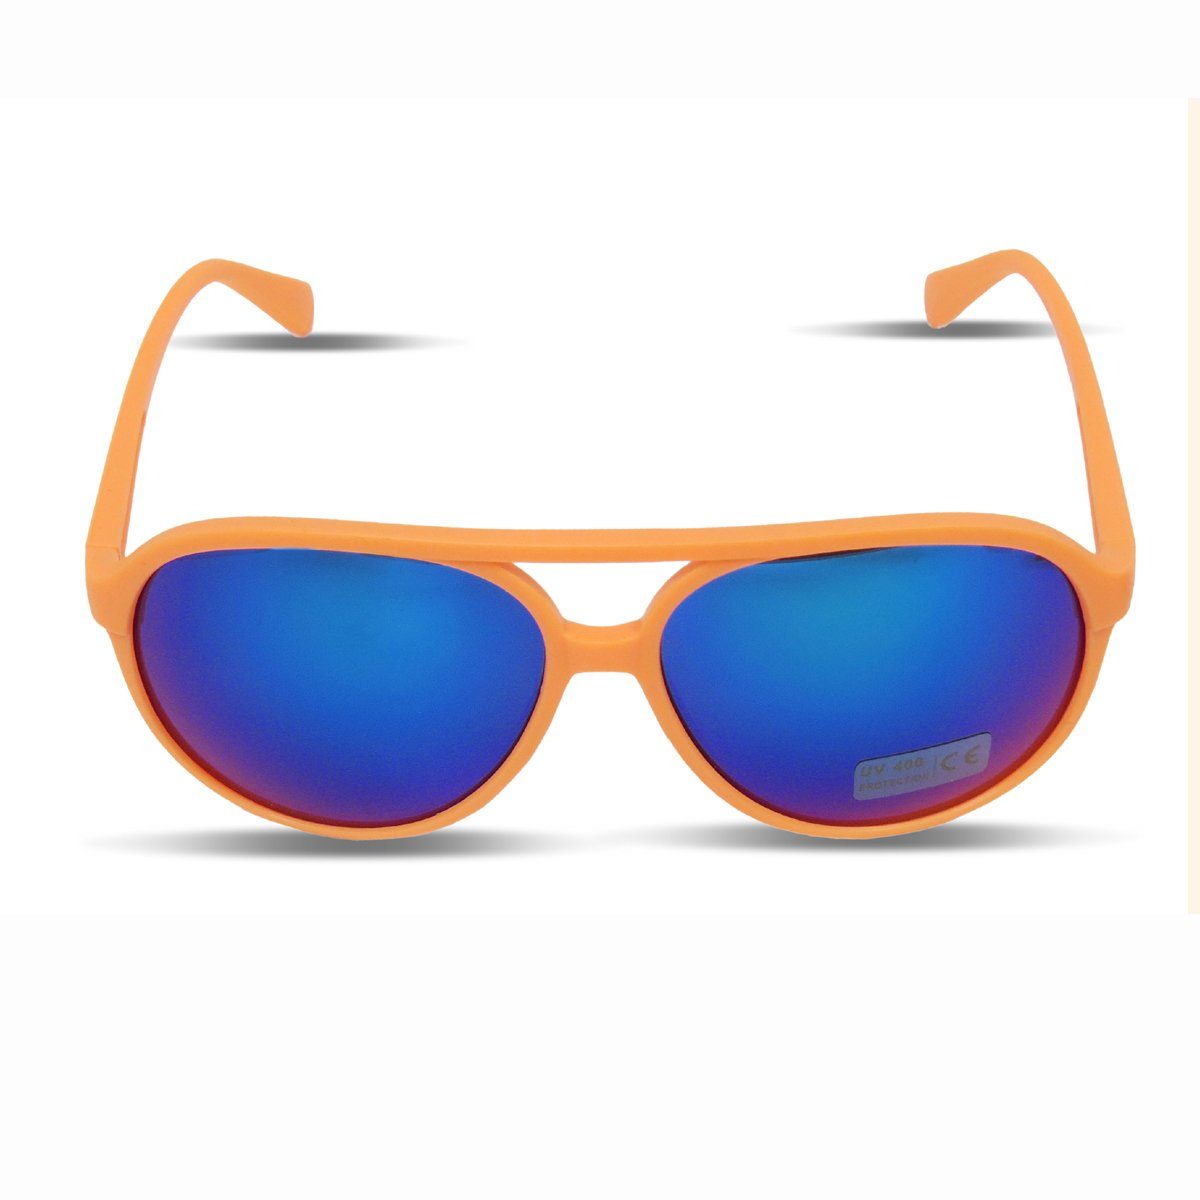 Supergünstiger Rundfunk Sonia Originelli Sonnenbrille Sonnenbrille Fun Gläser: Neon Onesize, Verspiegelt Knallig Verspiegelt Brille orange